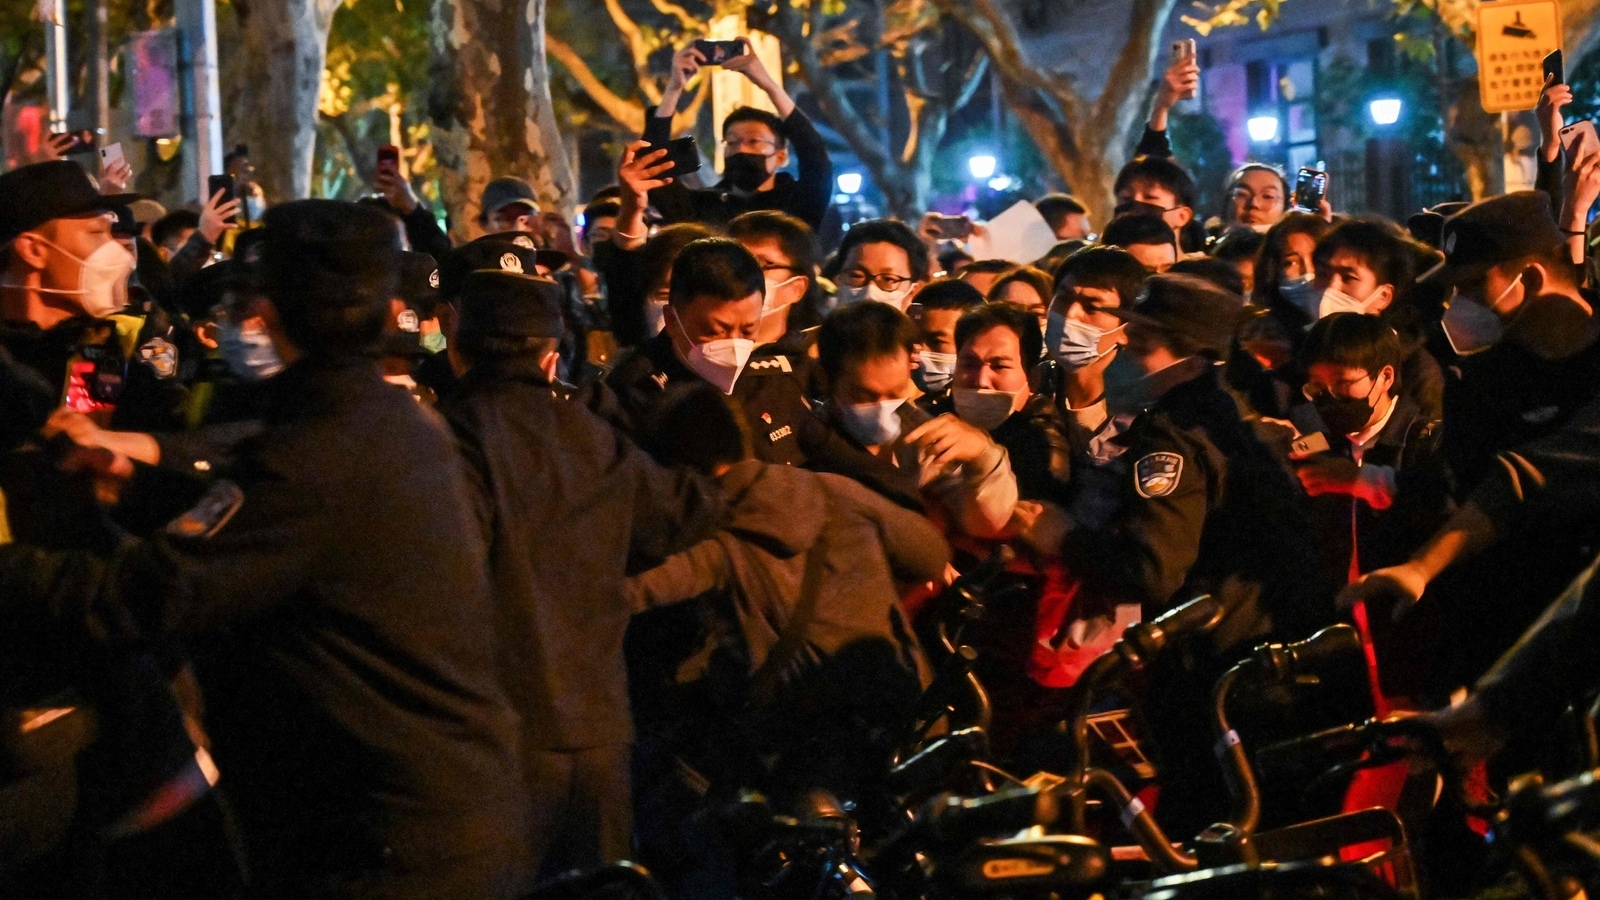 Protesta china contra el confinamiento llega a Wuhan, donde comenzó el covid |  5 puntos |  Noticias del mundo